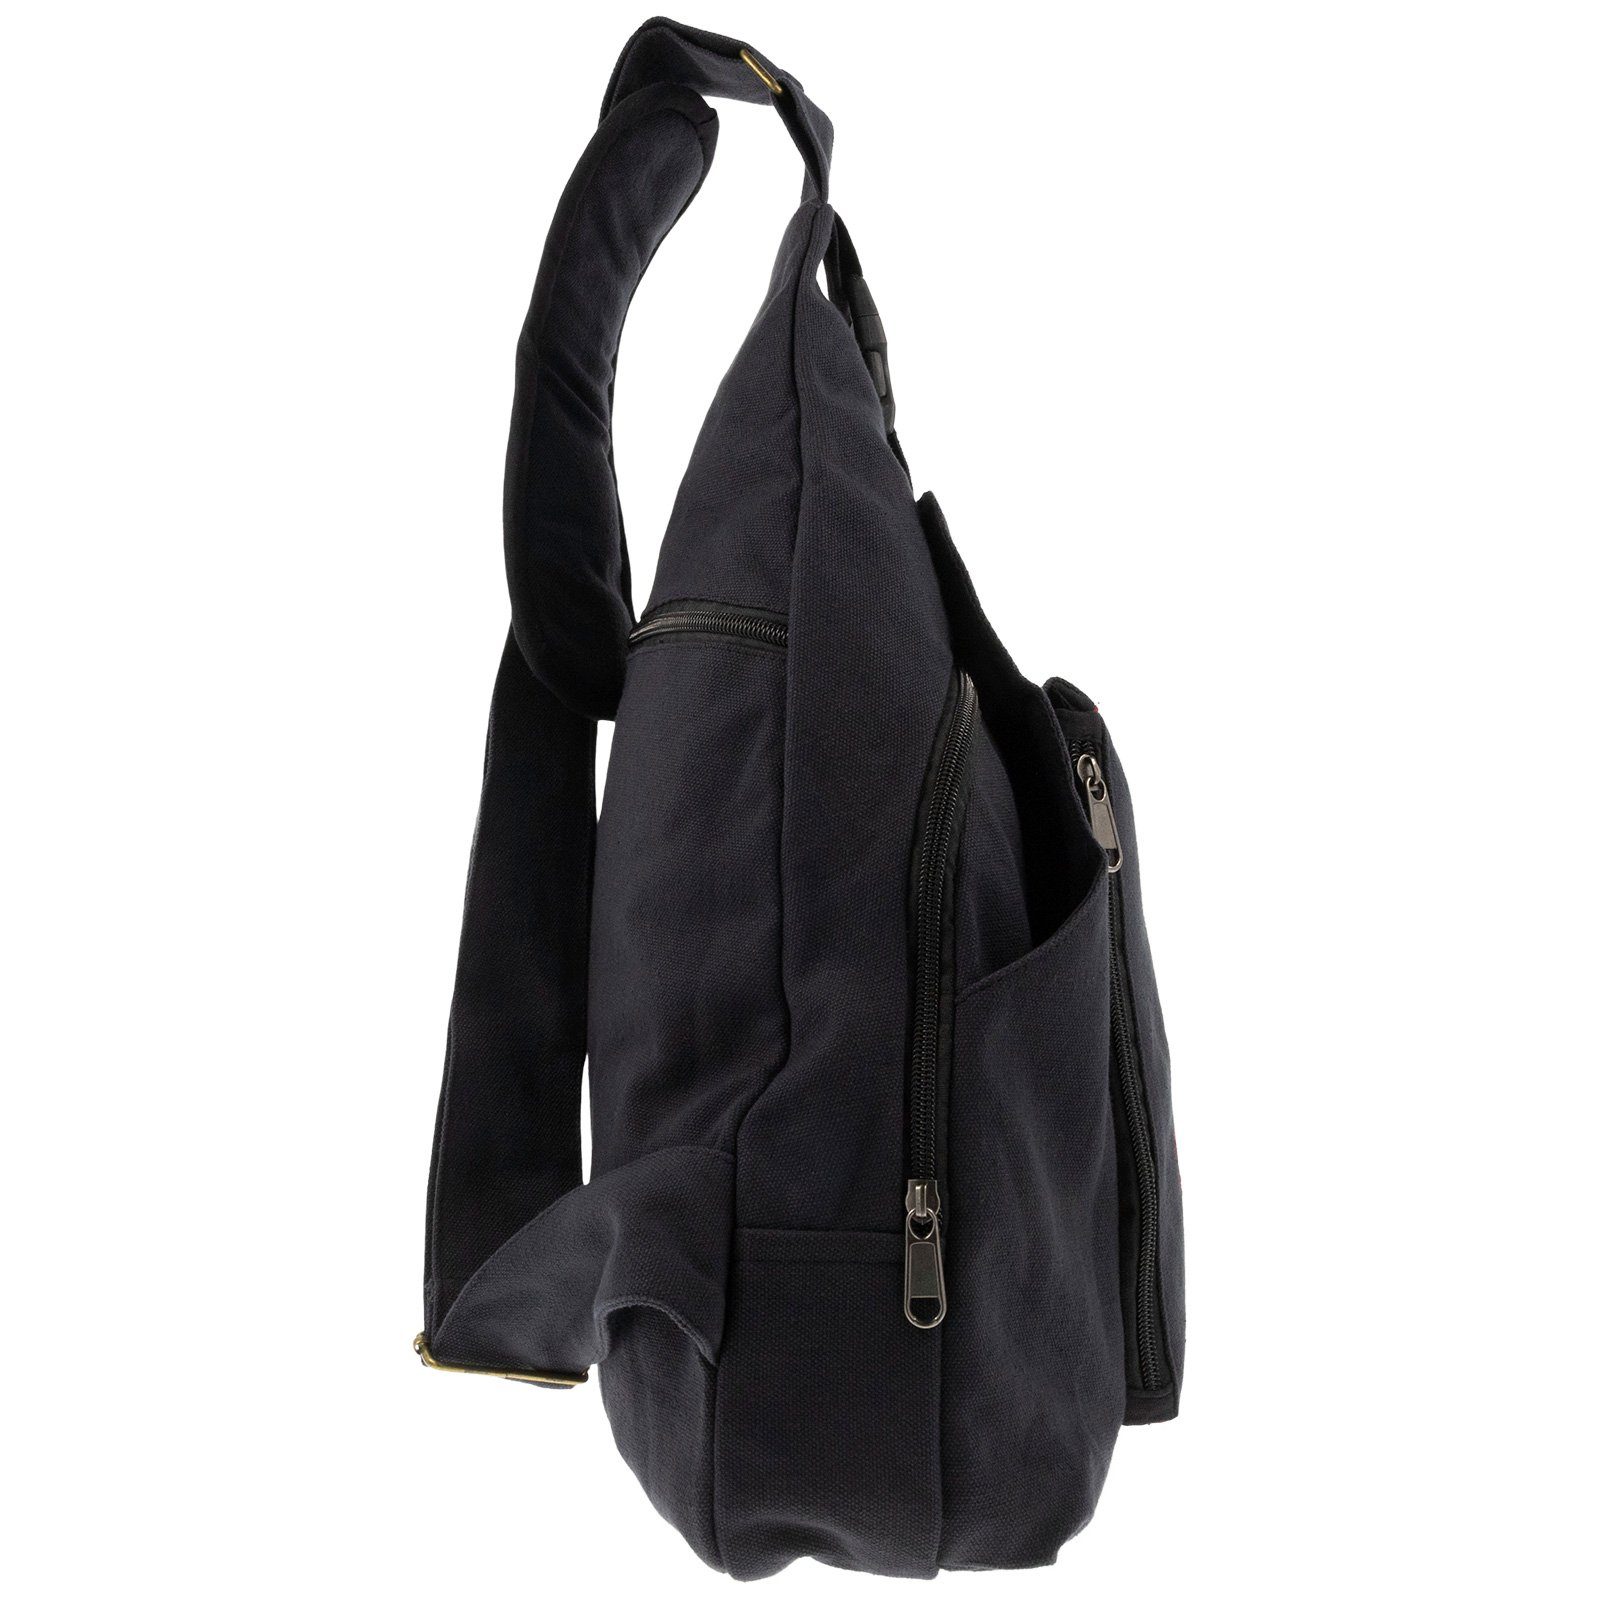 Schultertasche Schultertasche / Sling L OM UND KUNST Bag Rucksack MAGIE Symbol Bodybag Schwarz Rot Hippie